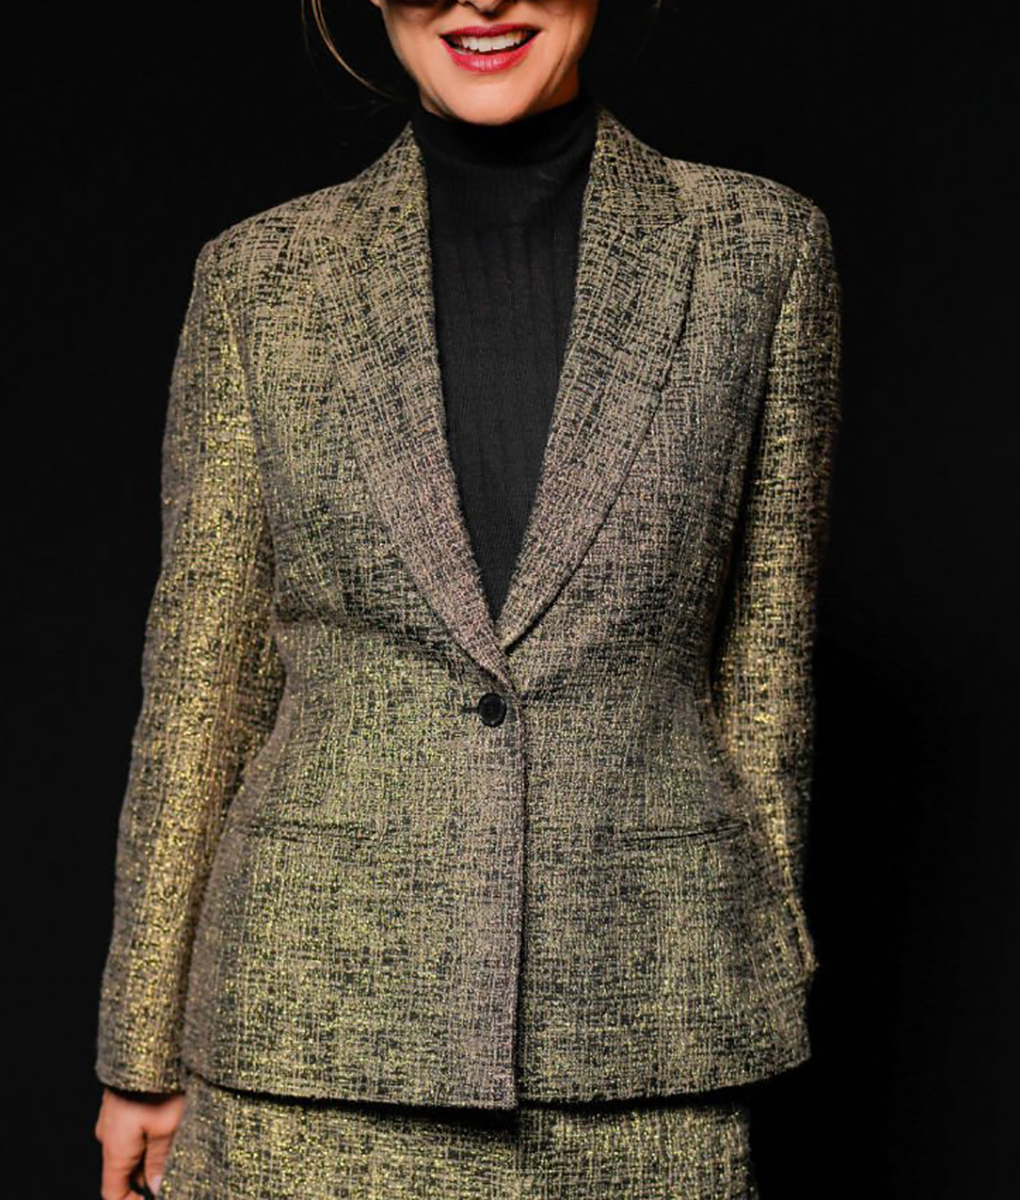 Natalie Portman Fashion Week Brown Blazer (5)